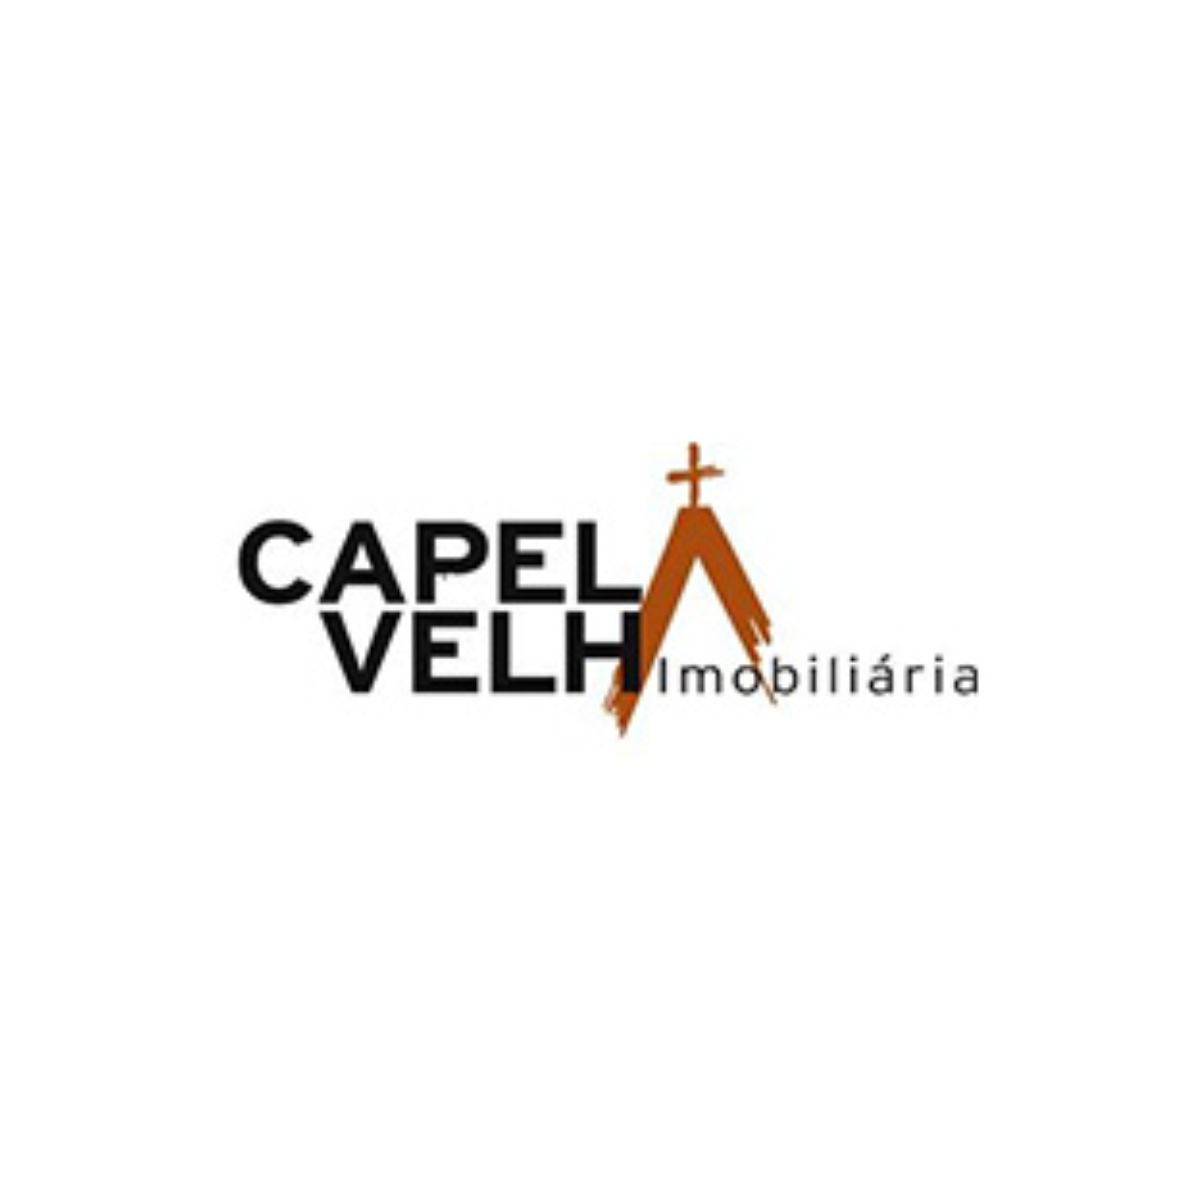 Imobiliária Capela Velha Ltda